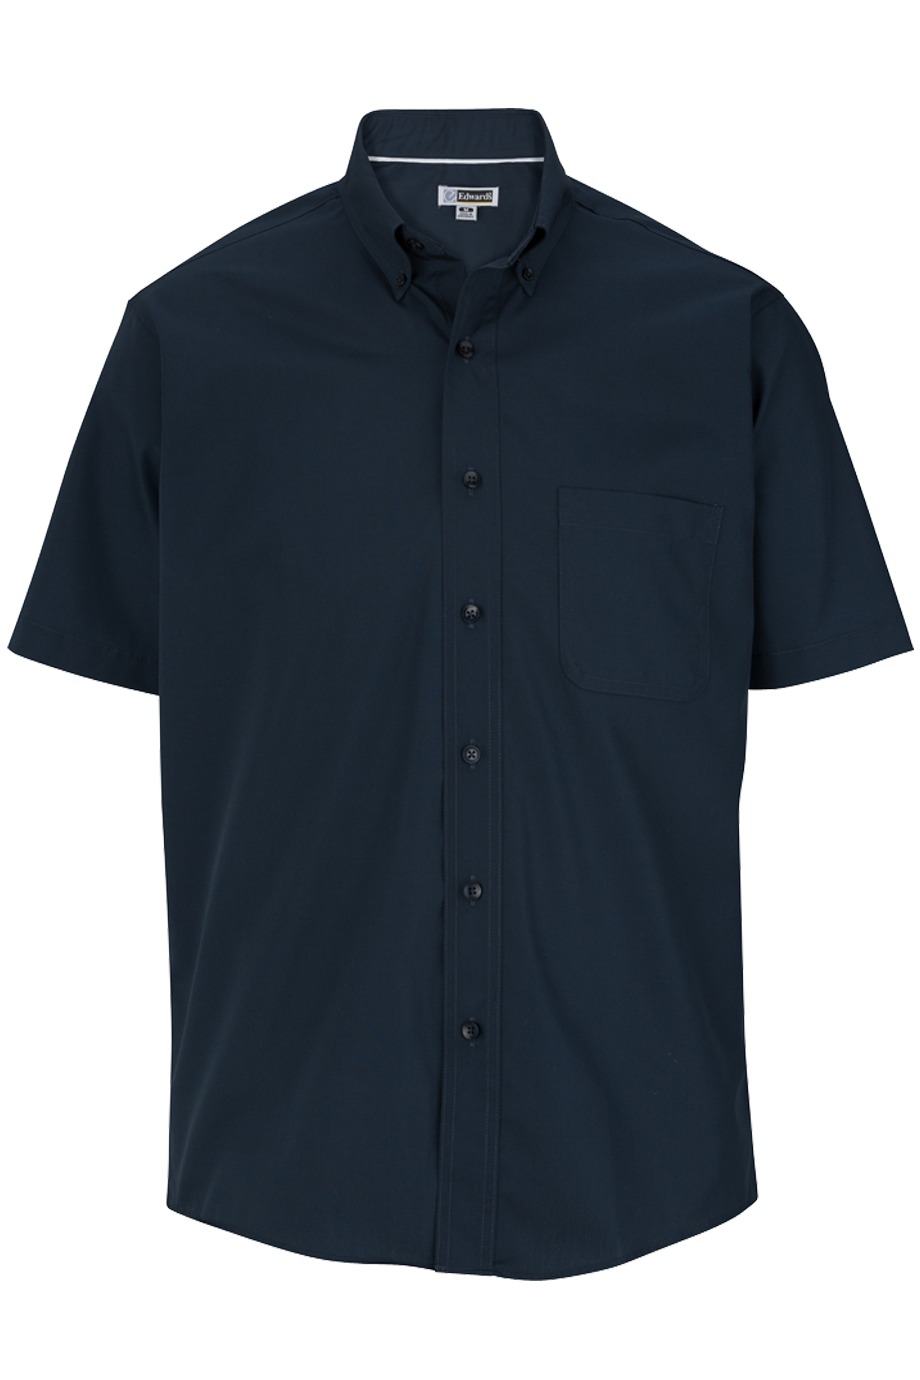 Edwards Garment 1245 - Men's Short Sleeve Soft Touch Polin Shirt